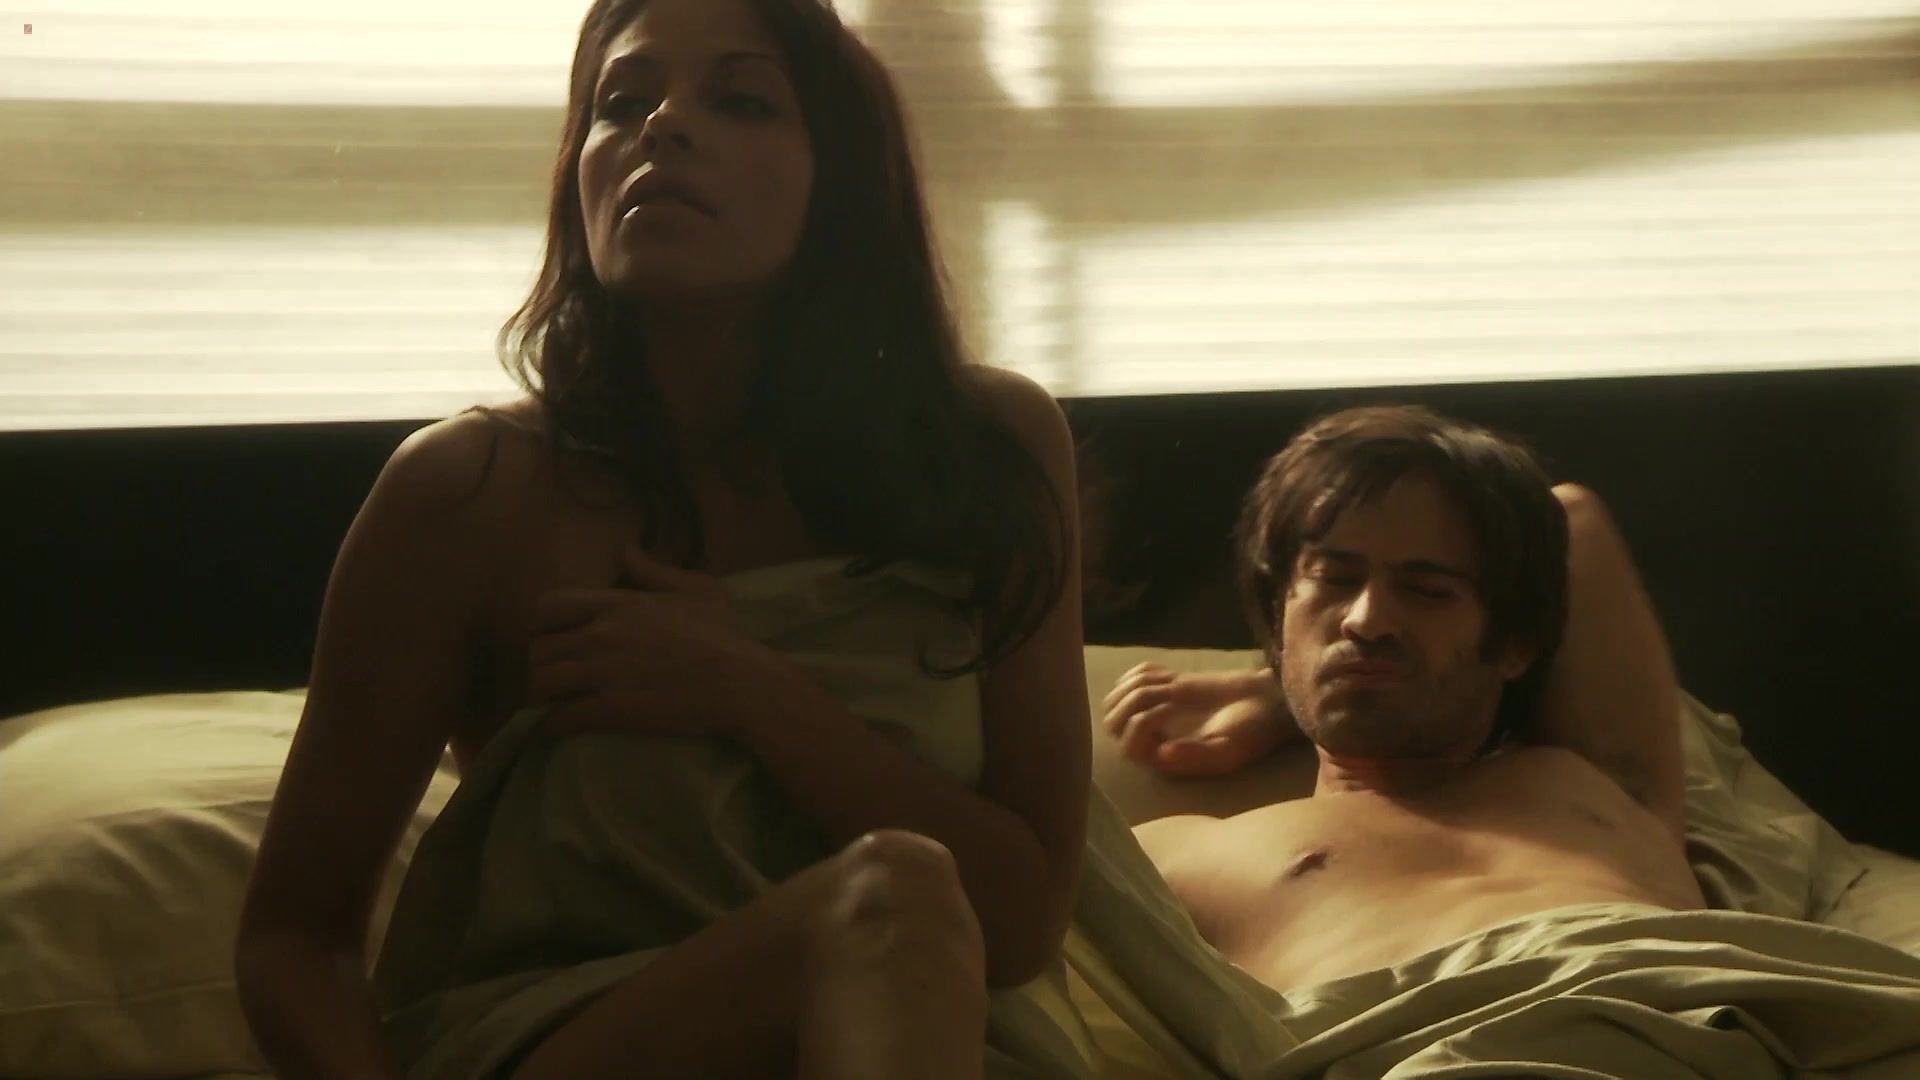 Job Nude Celebs Scenes | Actress: Elizabeth Cervantes | The movie "Oscura Seduccion" | Released in 2010 HomeDoPorn